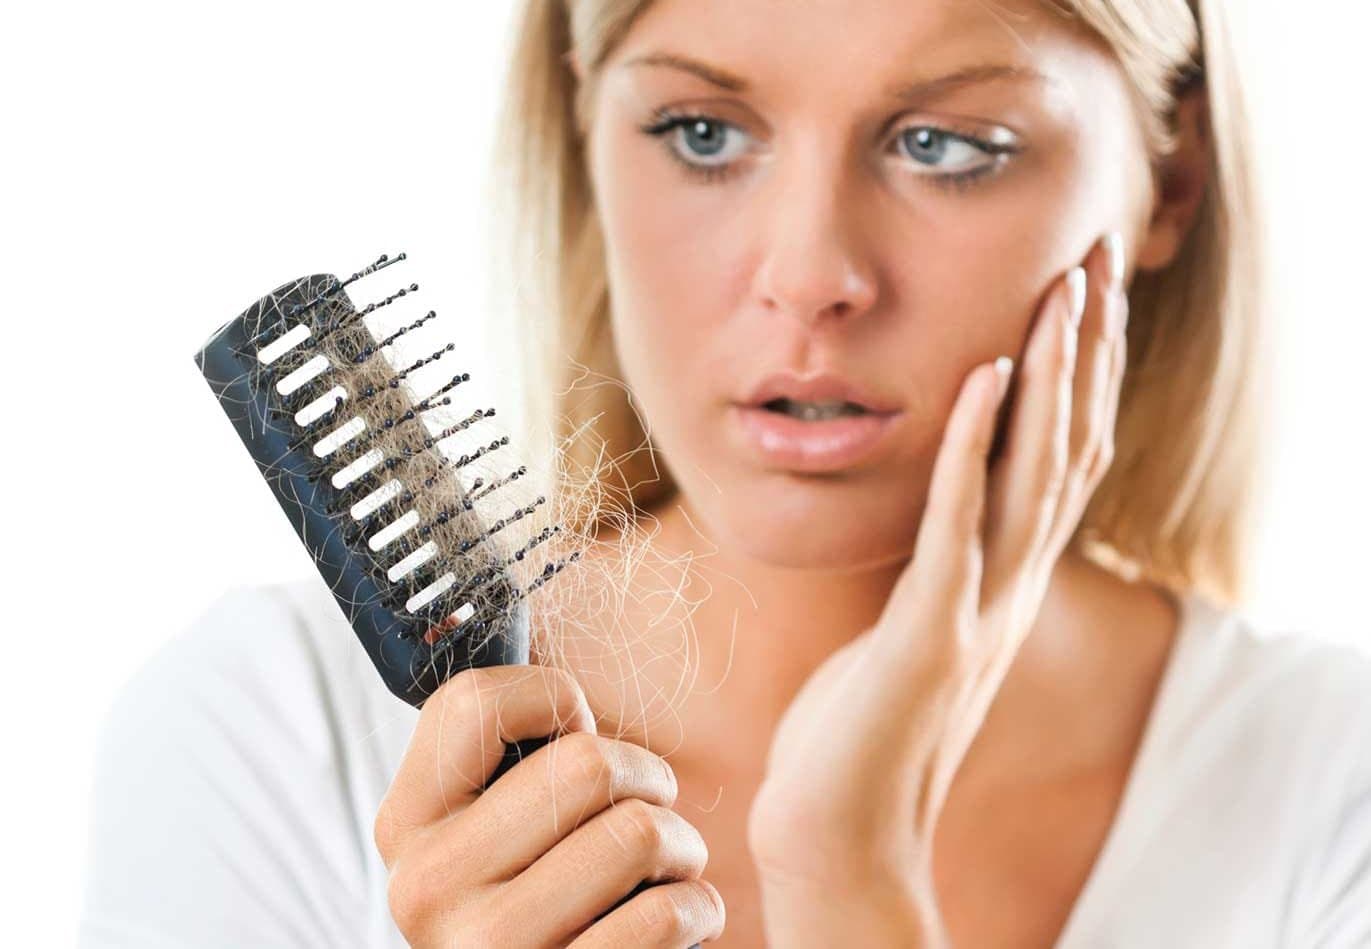 Kadınlarda Saç Dökülmesi Neden Olur? Saç Dökülmesi Nasıl Önlenir? kapak resmi